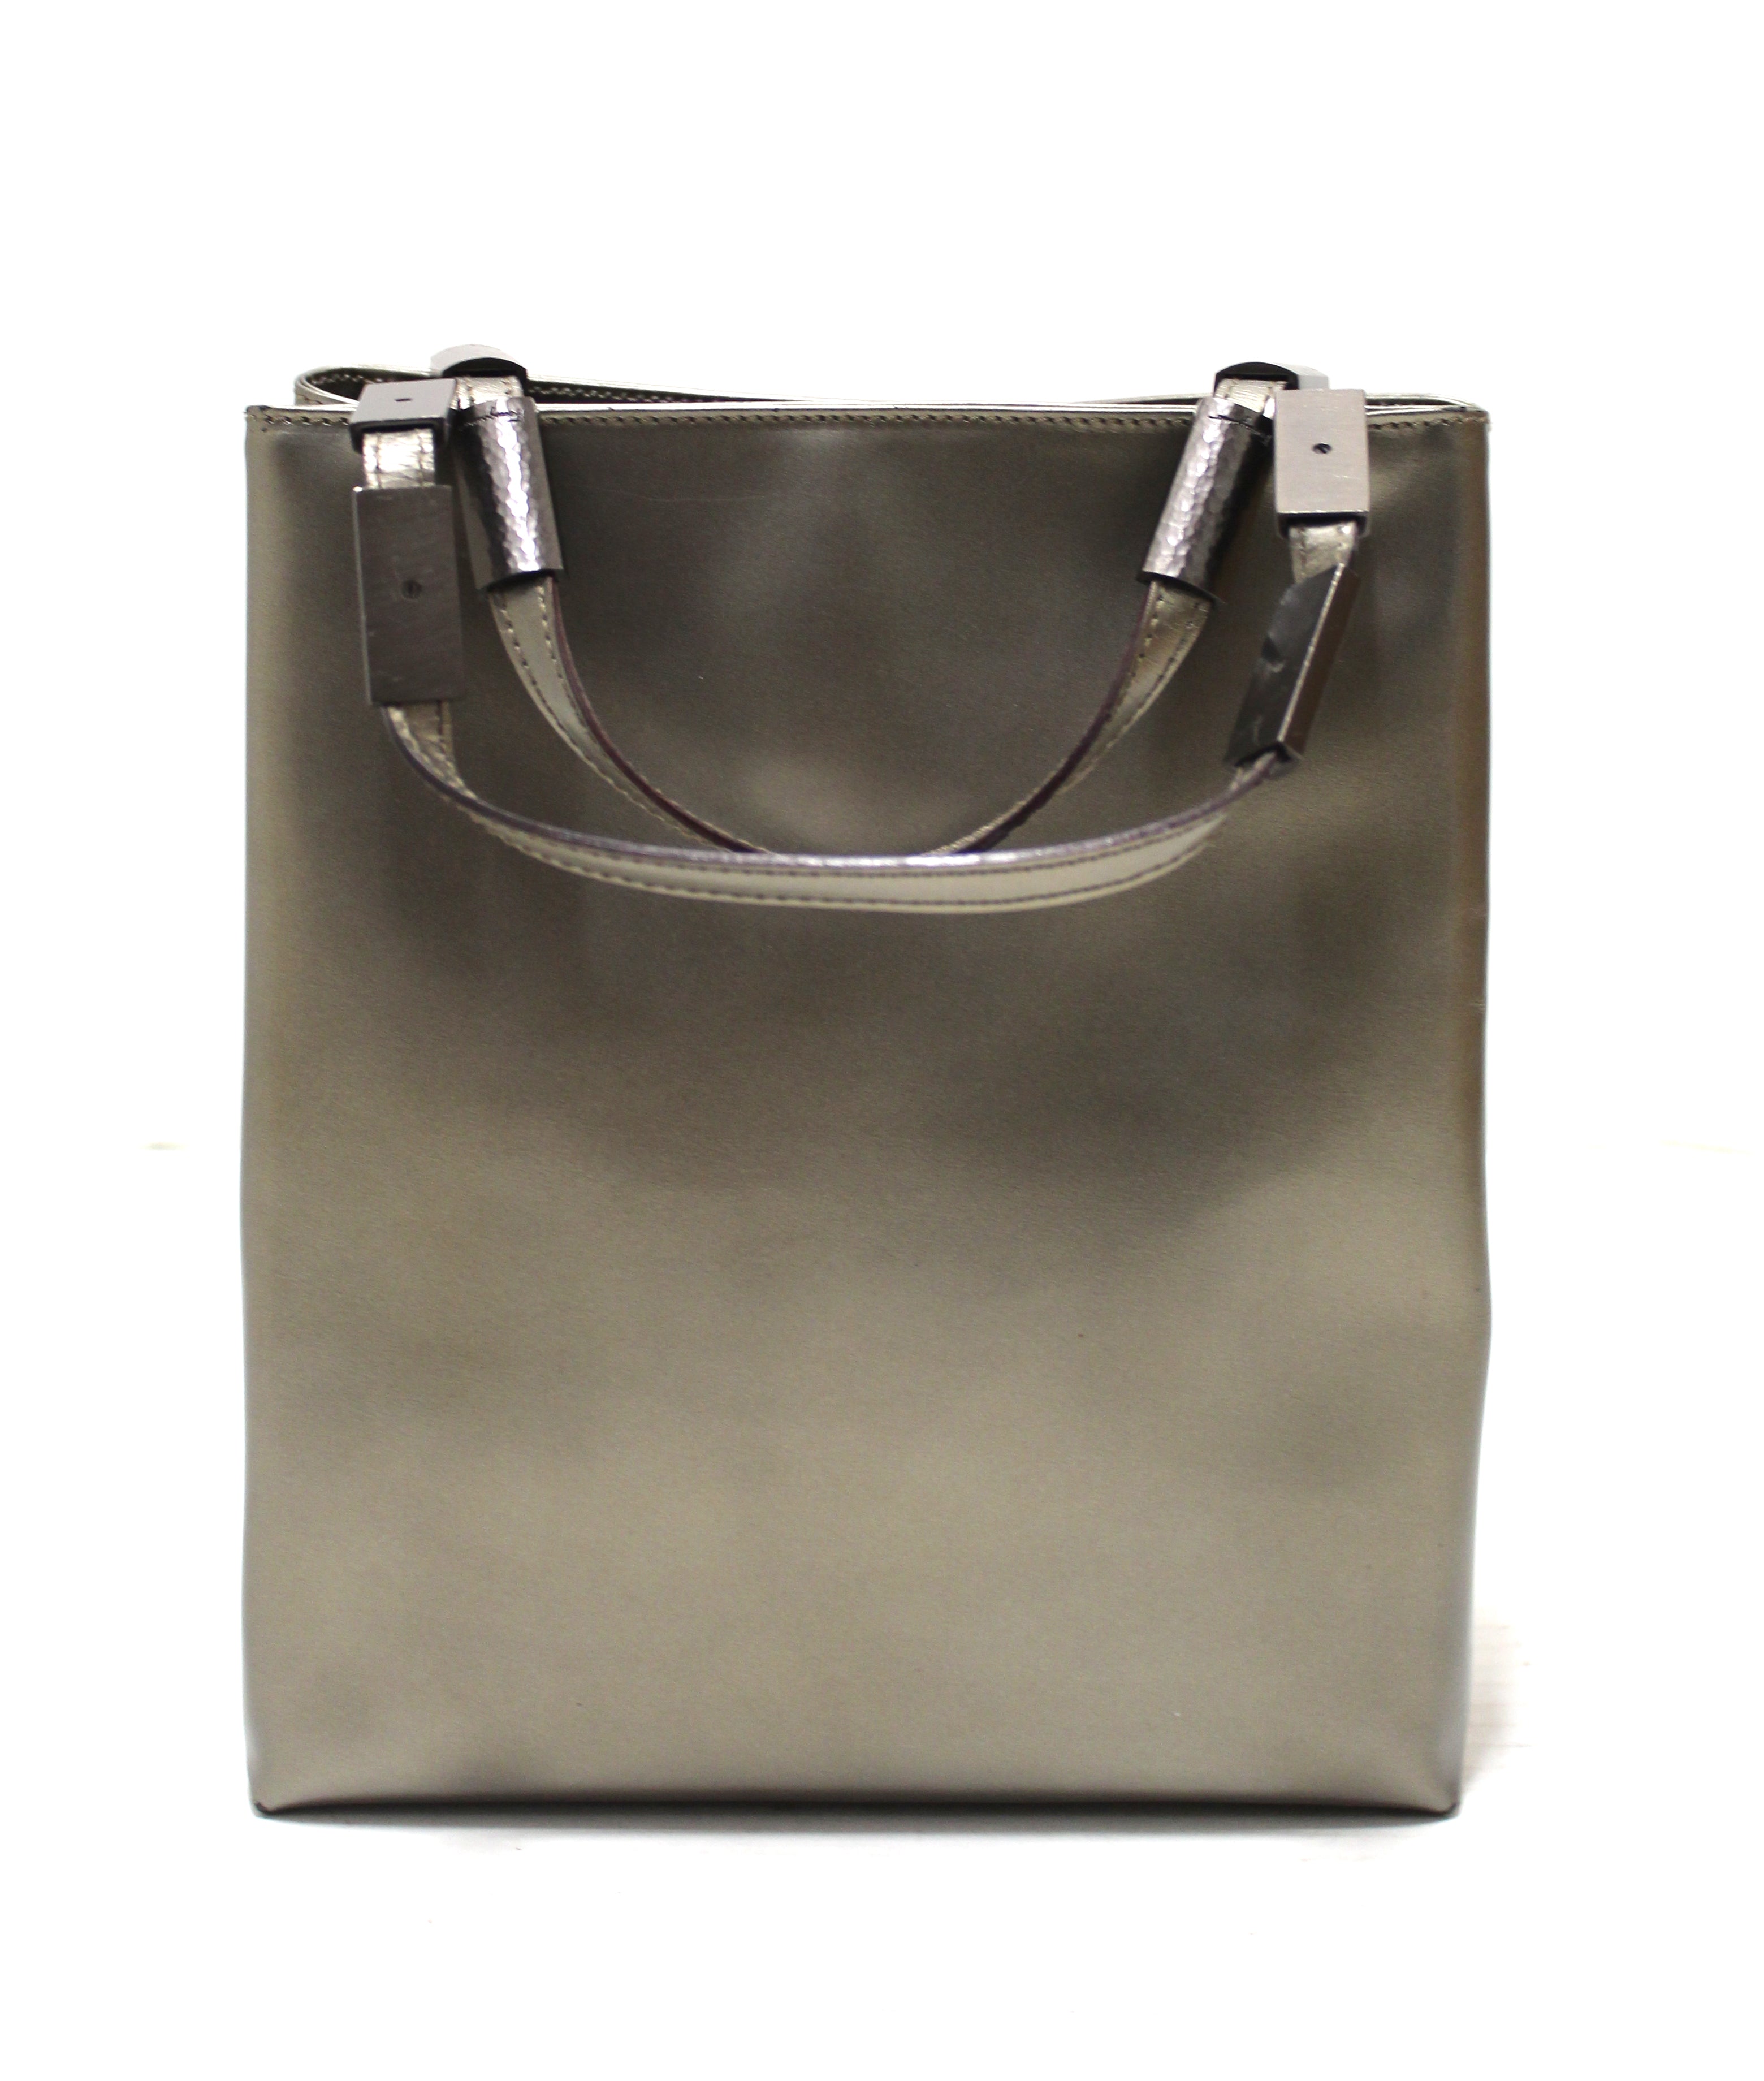 Authentic Salvatore Ferragamo Sage Green Shiny Leather Small Tote Bag